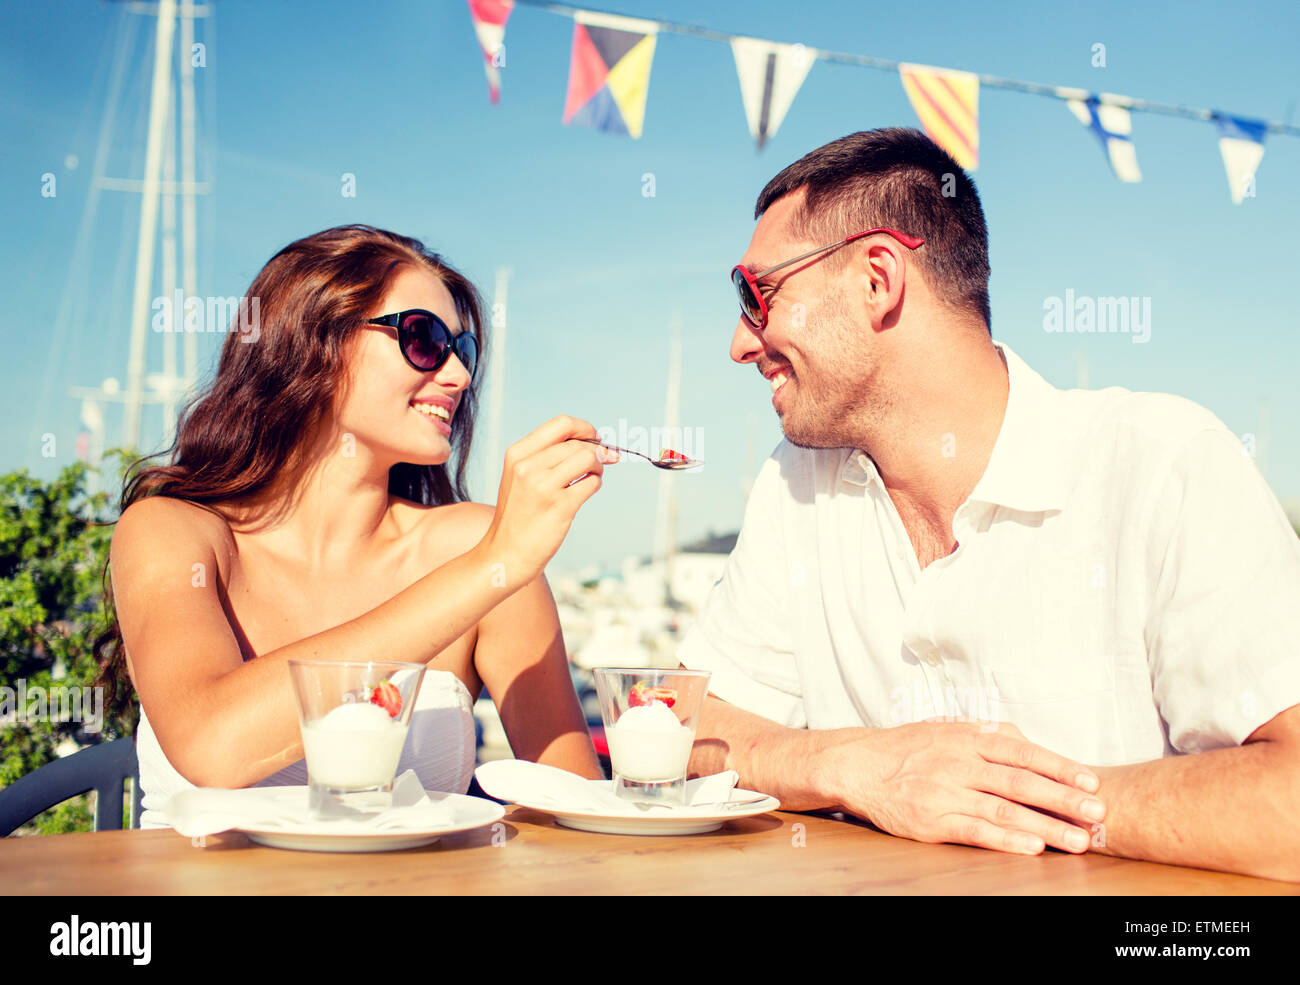 Smiling couple eating dessert au café Banque D'Images